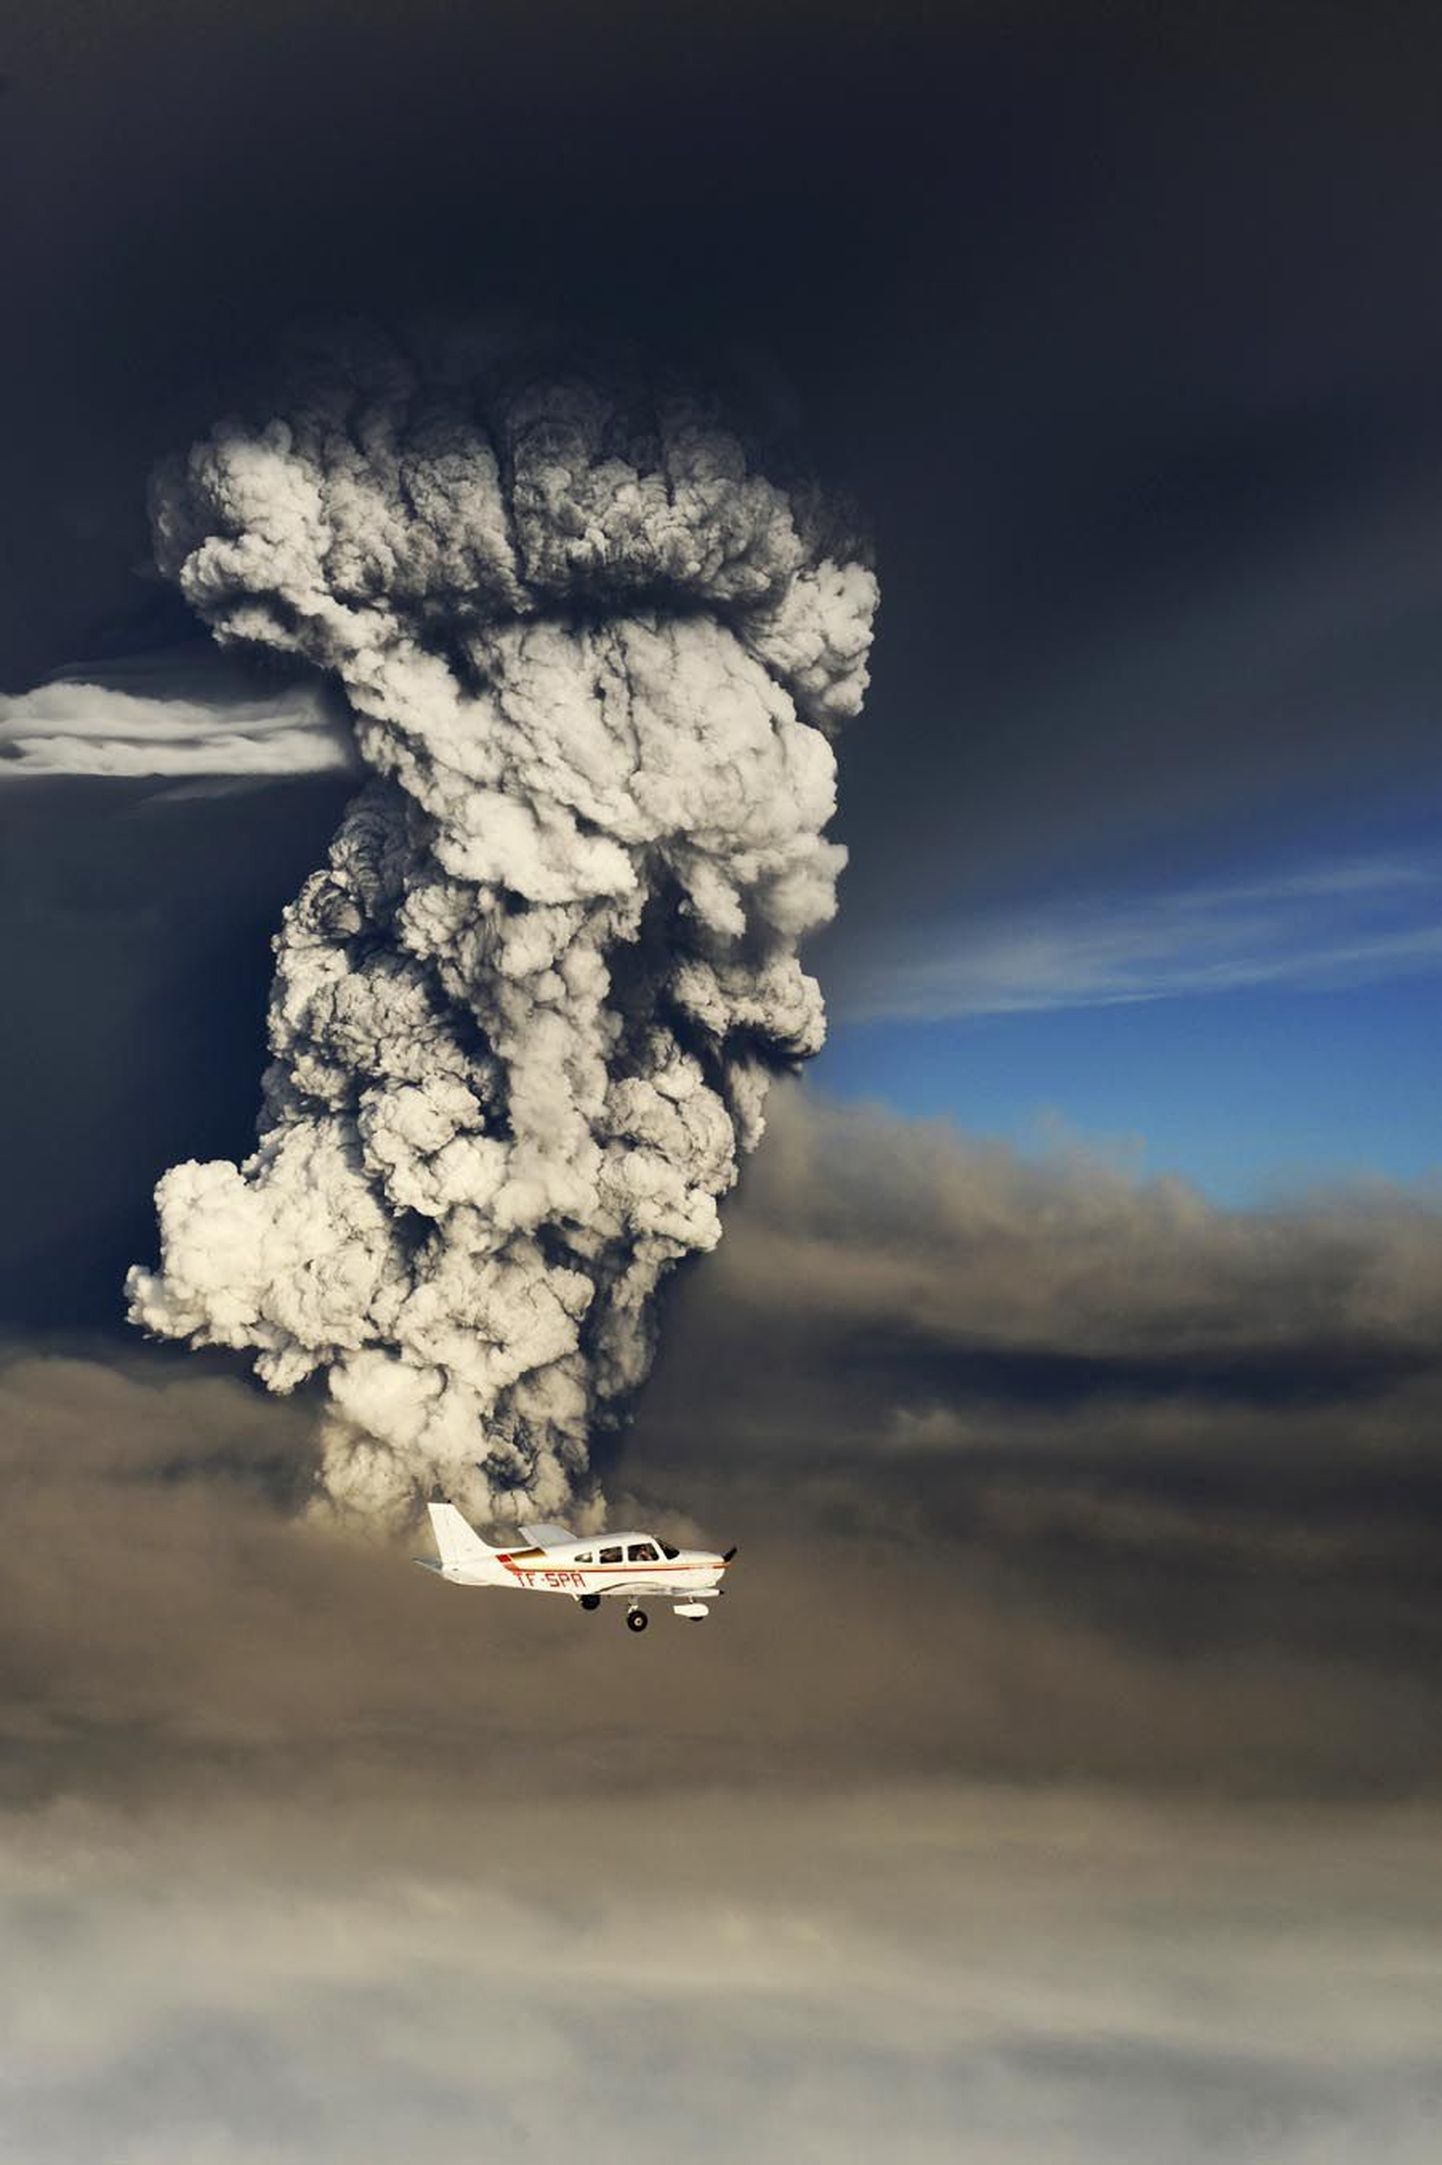 Grímsvötni vulkaani, mis lennufirmasid reise tühistama sunnib, said eralennukite omanikud eile lähemalt uurida. Foto on tehtud Islandi kaguosas.